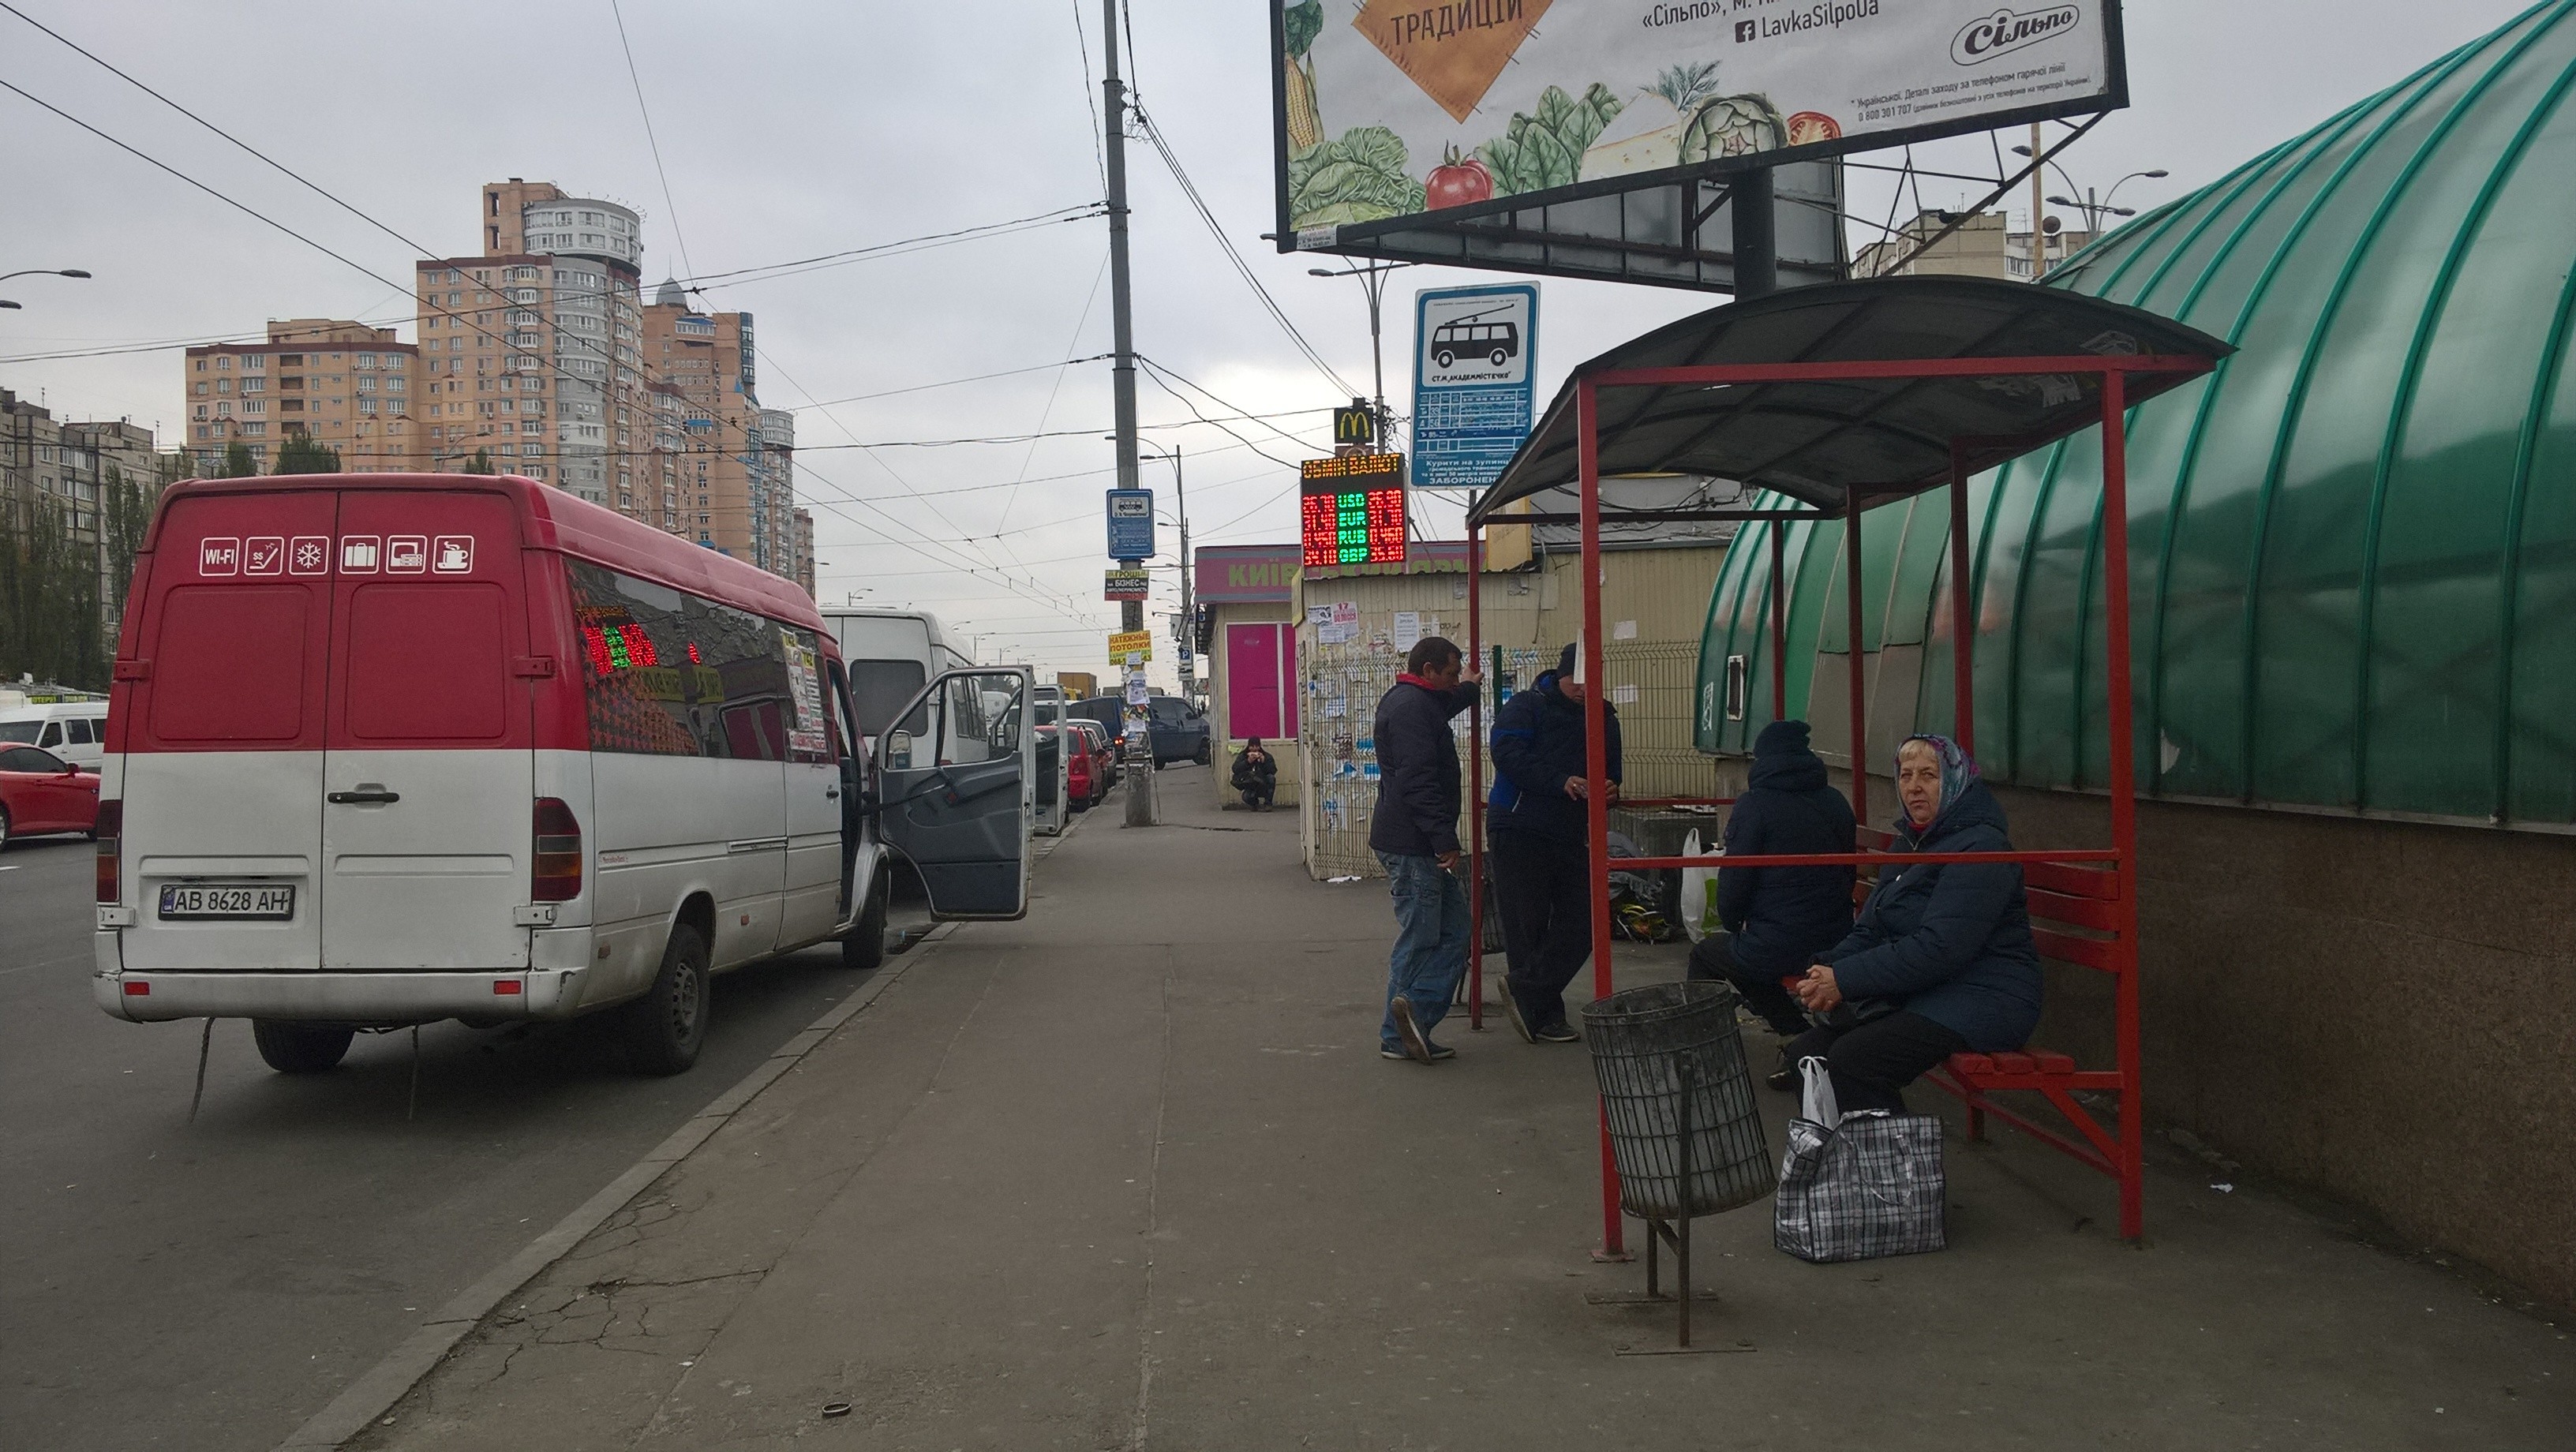 Наш автобус чекають кілька літніх людей, решта пасажирів встрибують до приватникам